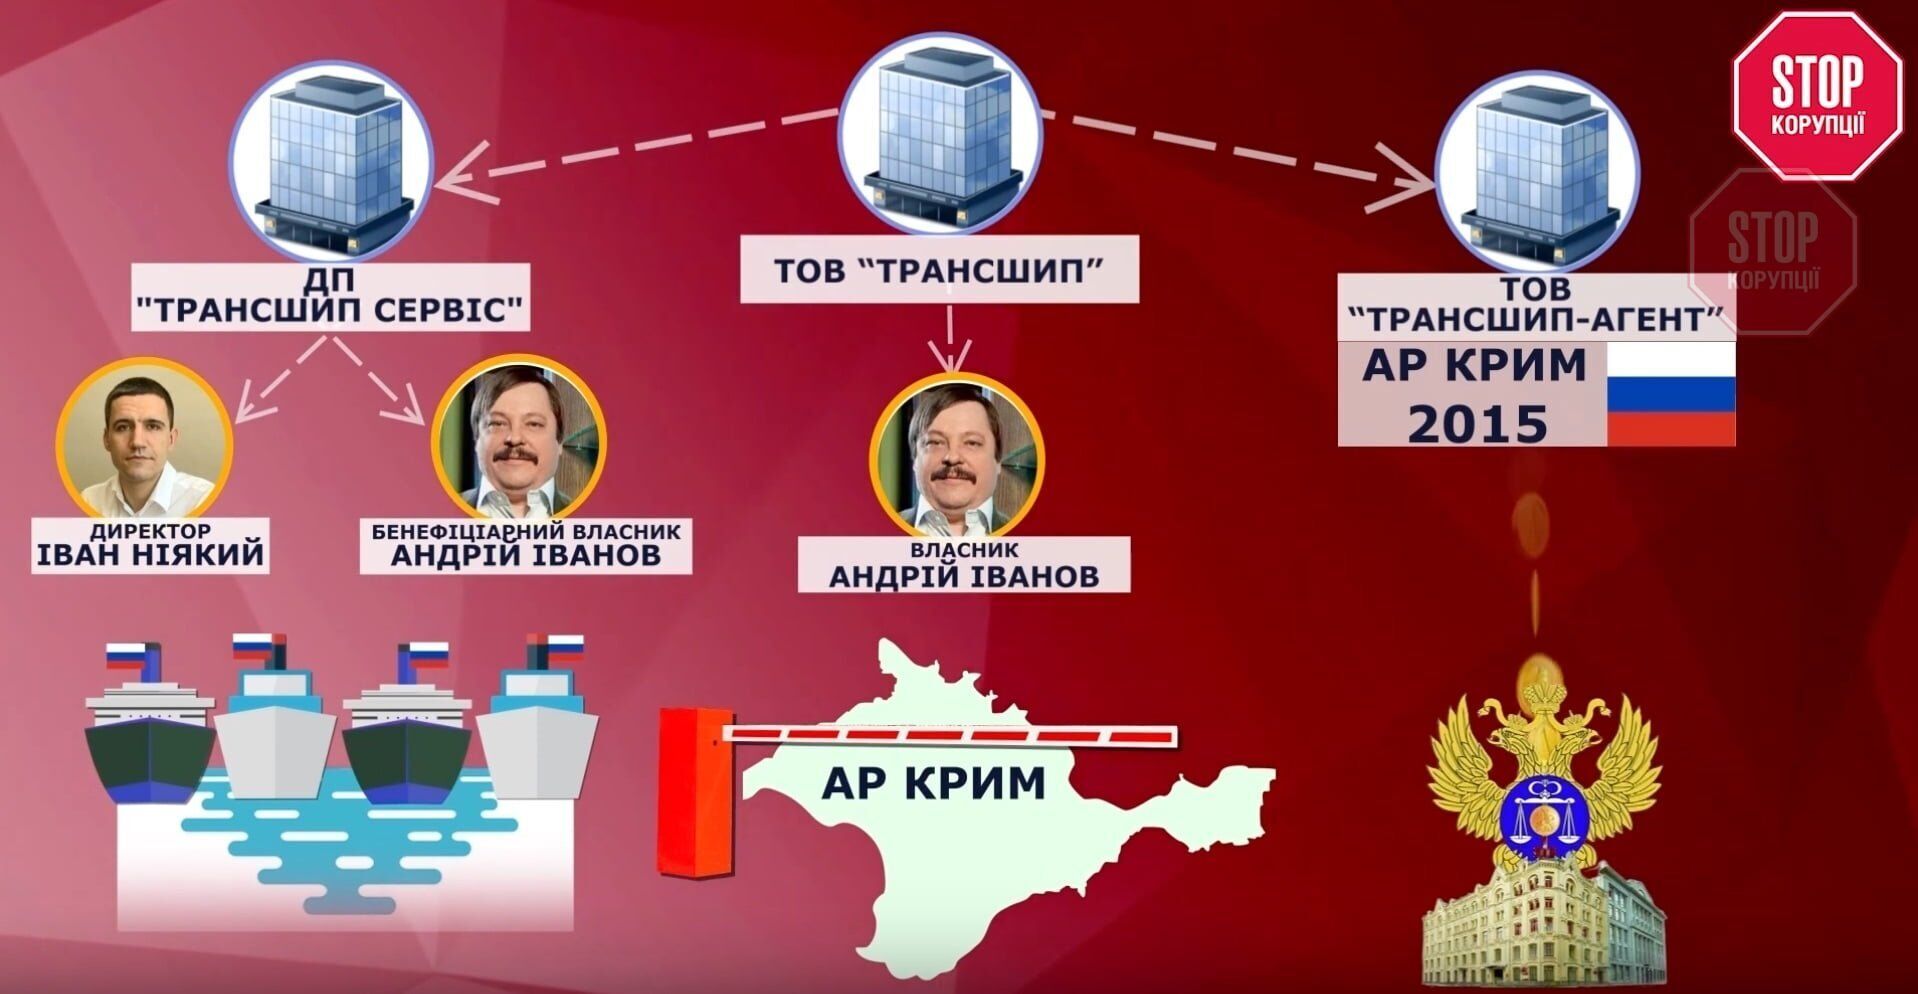 ТОВ ''Трансшип'' фігурує у кількох справах, пов'язаних з незаконним обслуговуванням російських суден